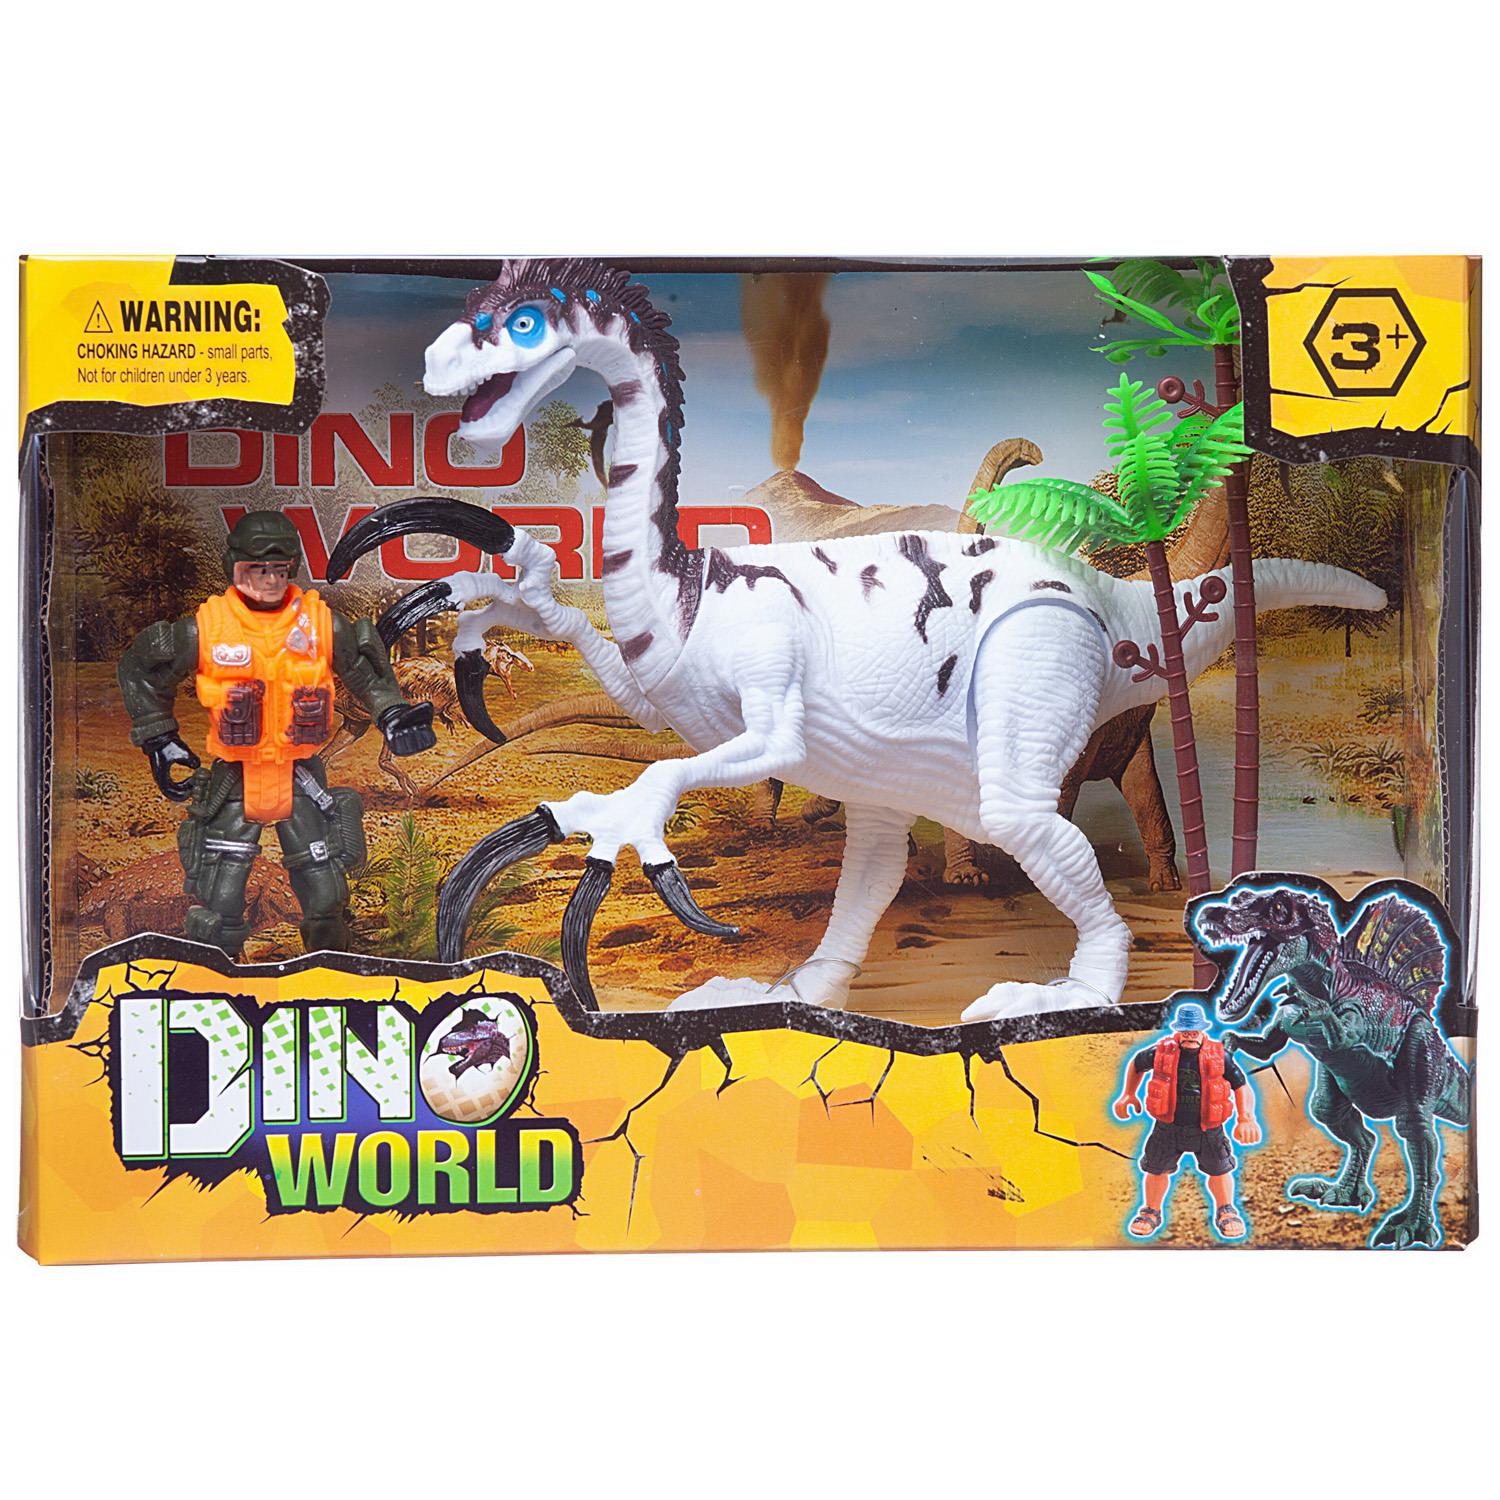 Купить WA-14232, Игровой набор Junfa Мир динозавров (большой белый динозавр, фигурка человека, акссесуары), Junfa toys,